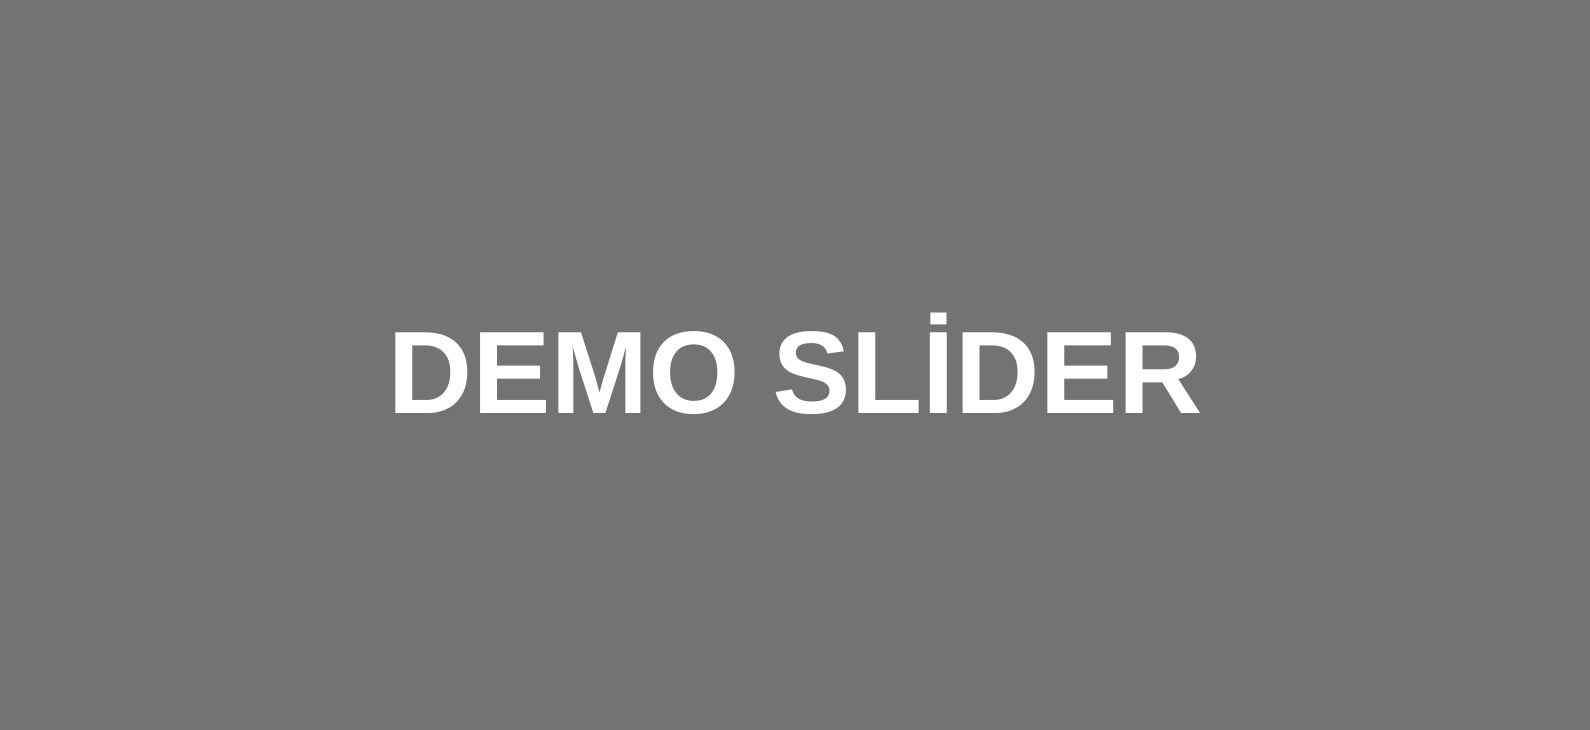 demoslider001